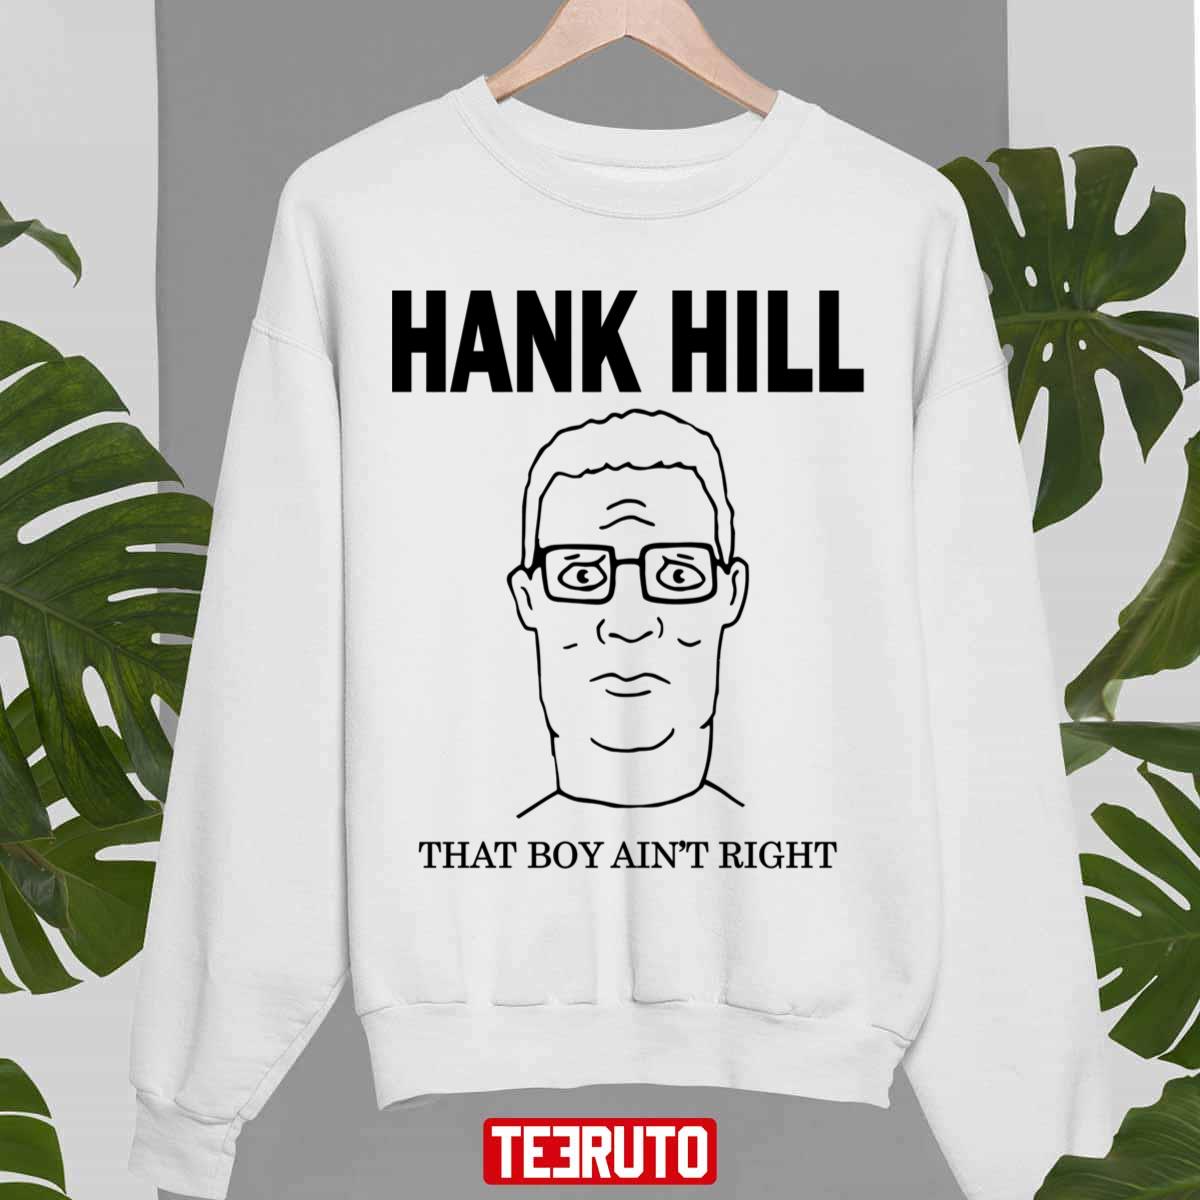 hank hill funny